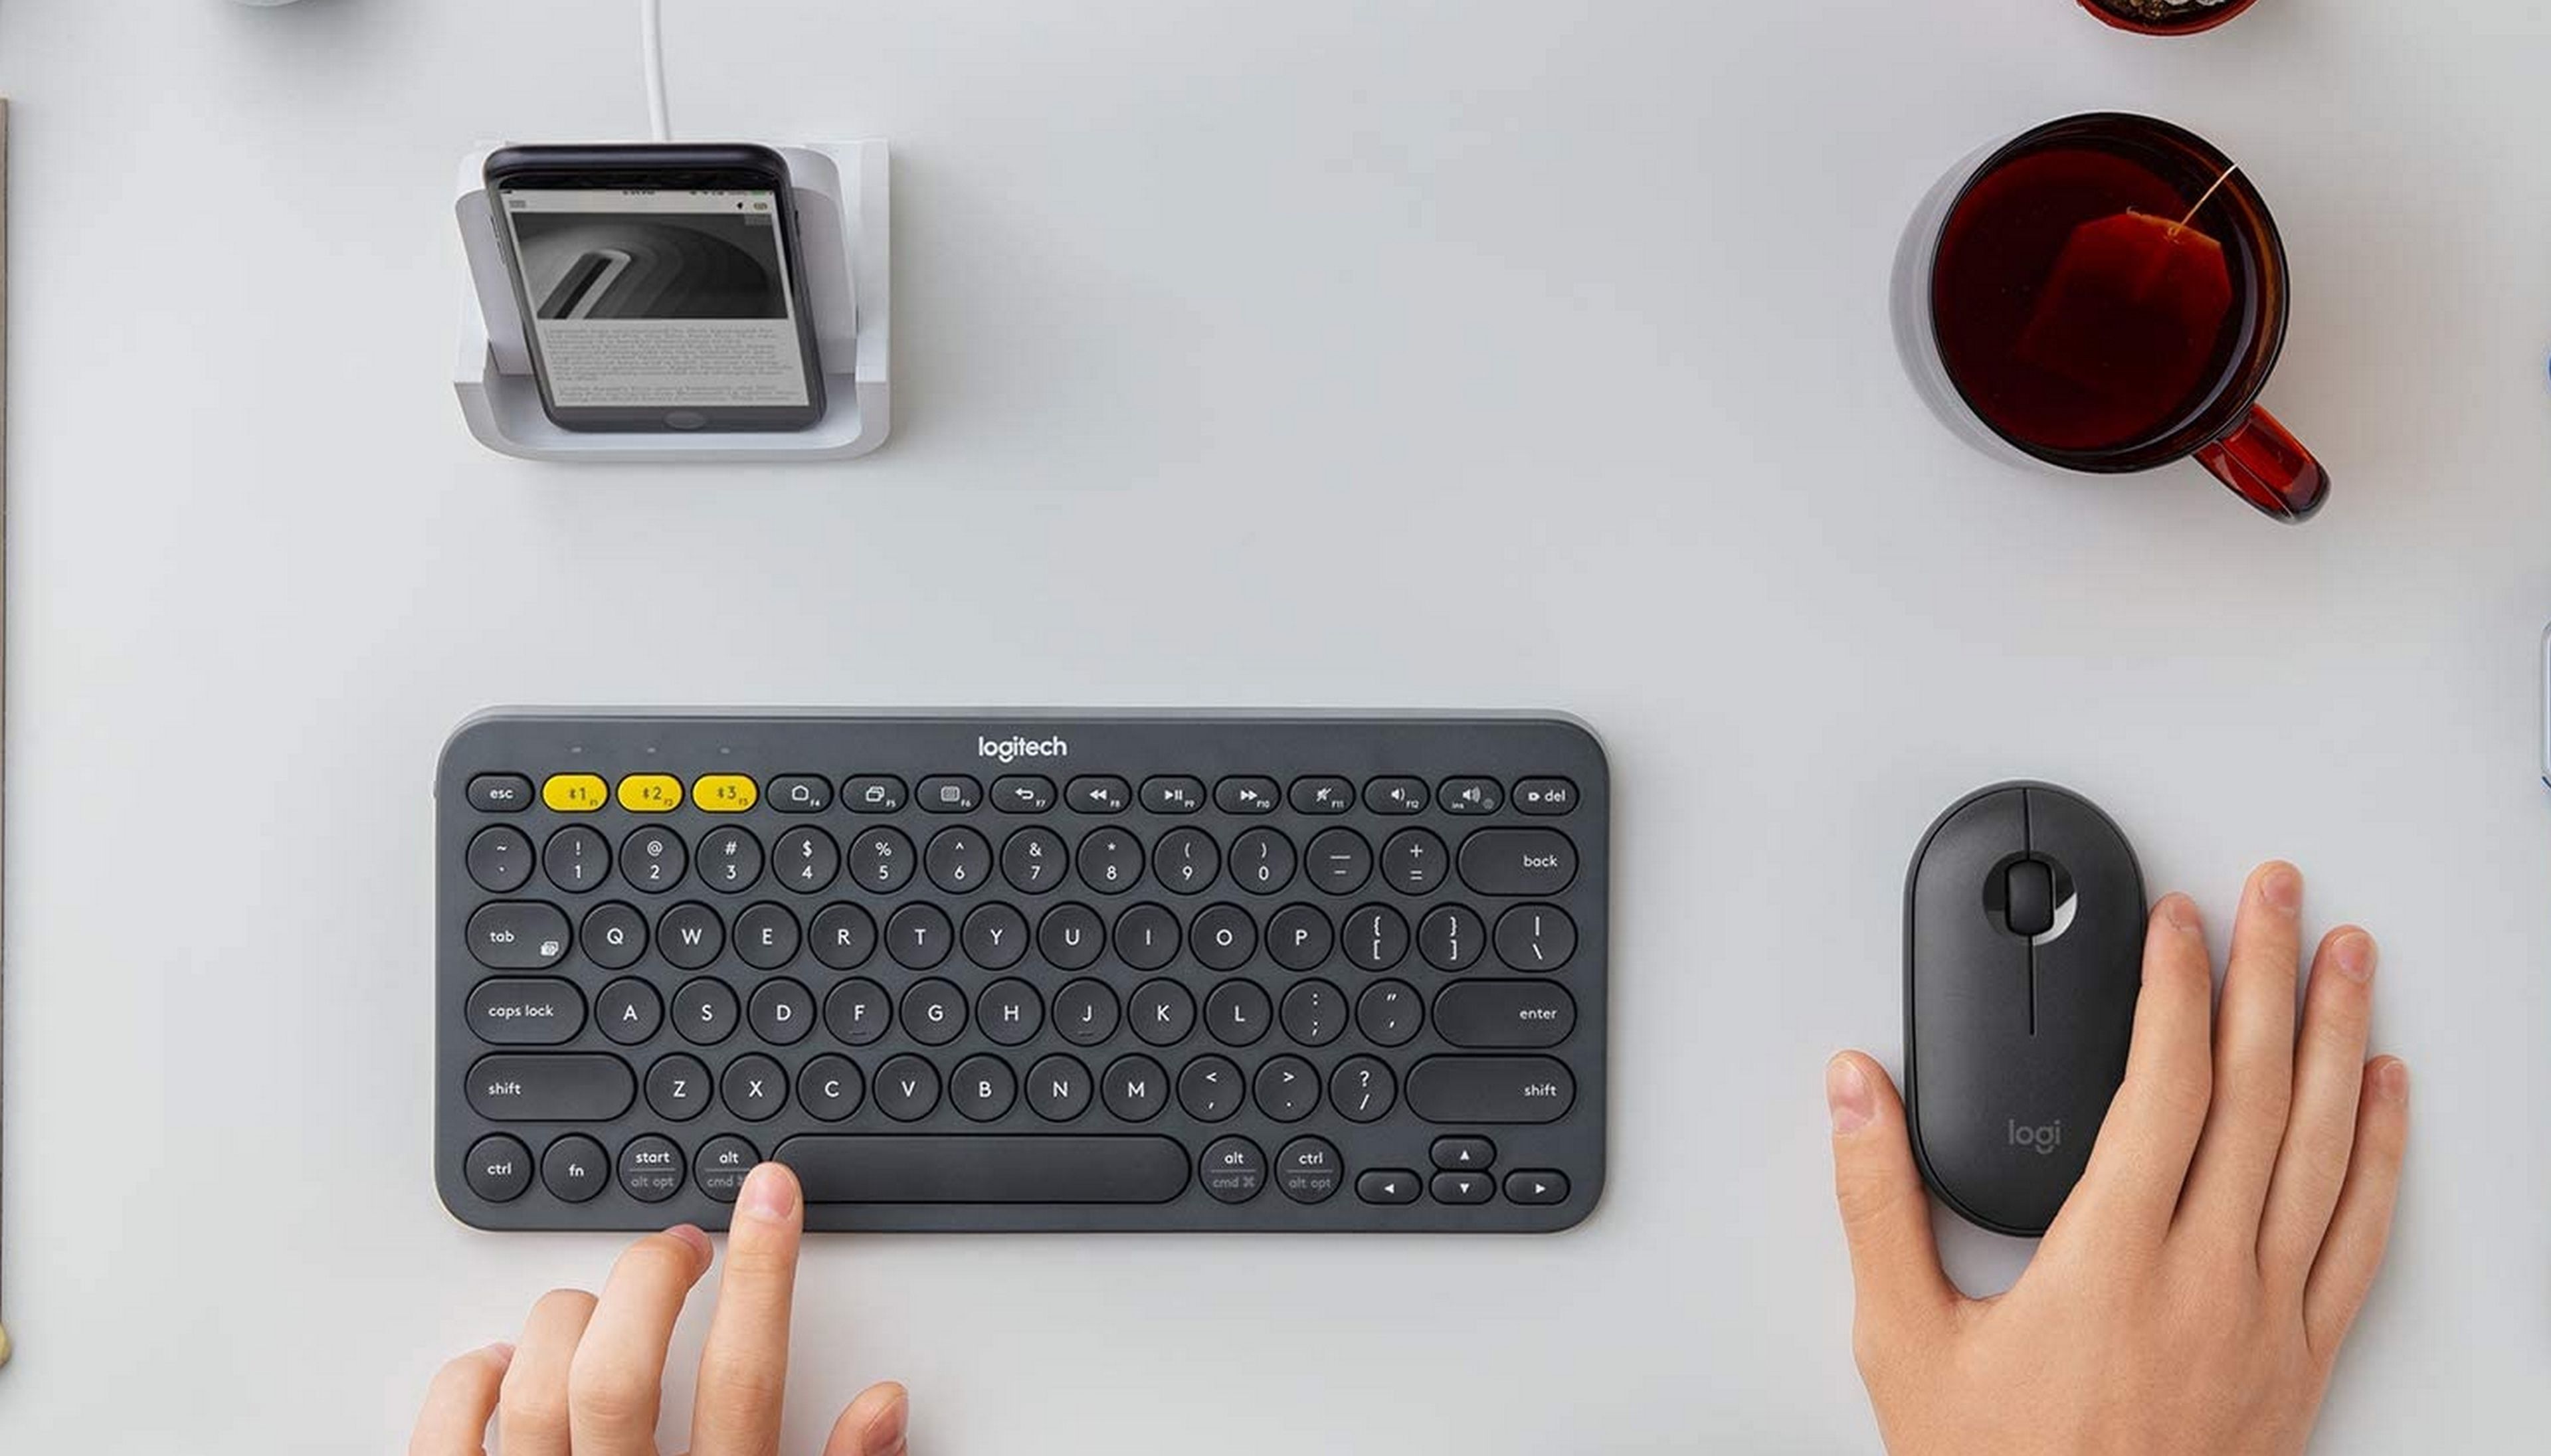 Navega en tu Smart TV con comodidad con este teclado inalámbrico de Logitech  por 32,99 euros